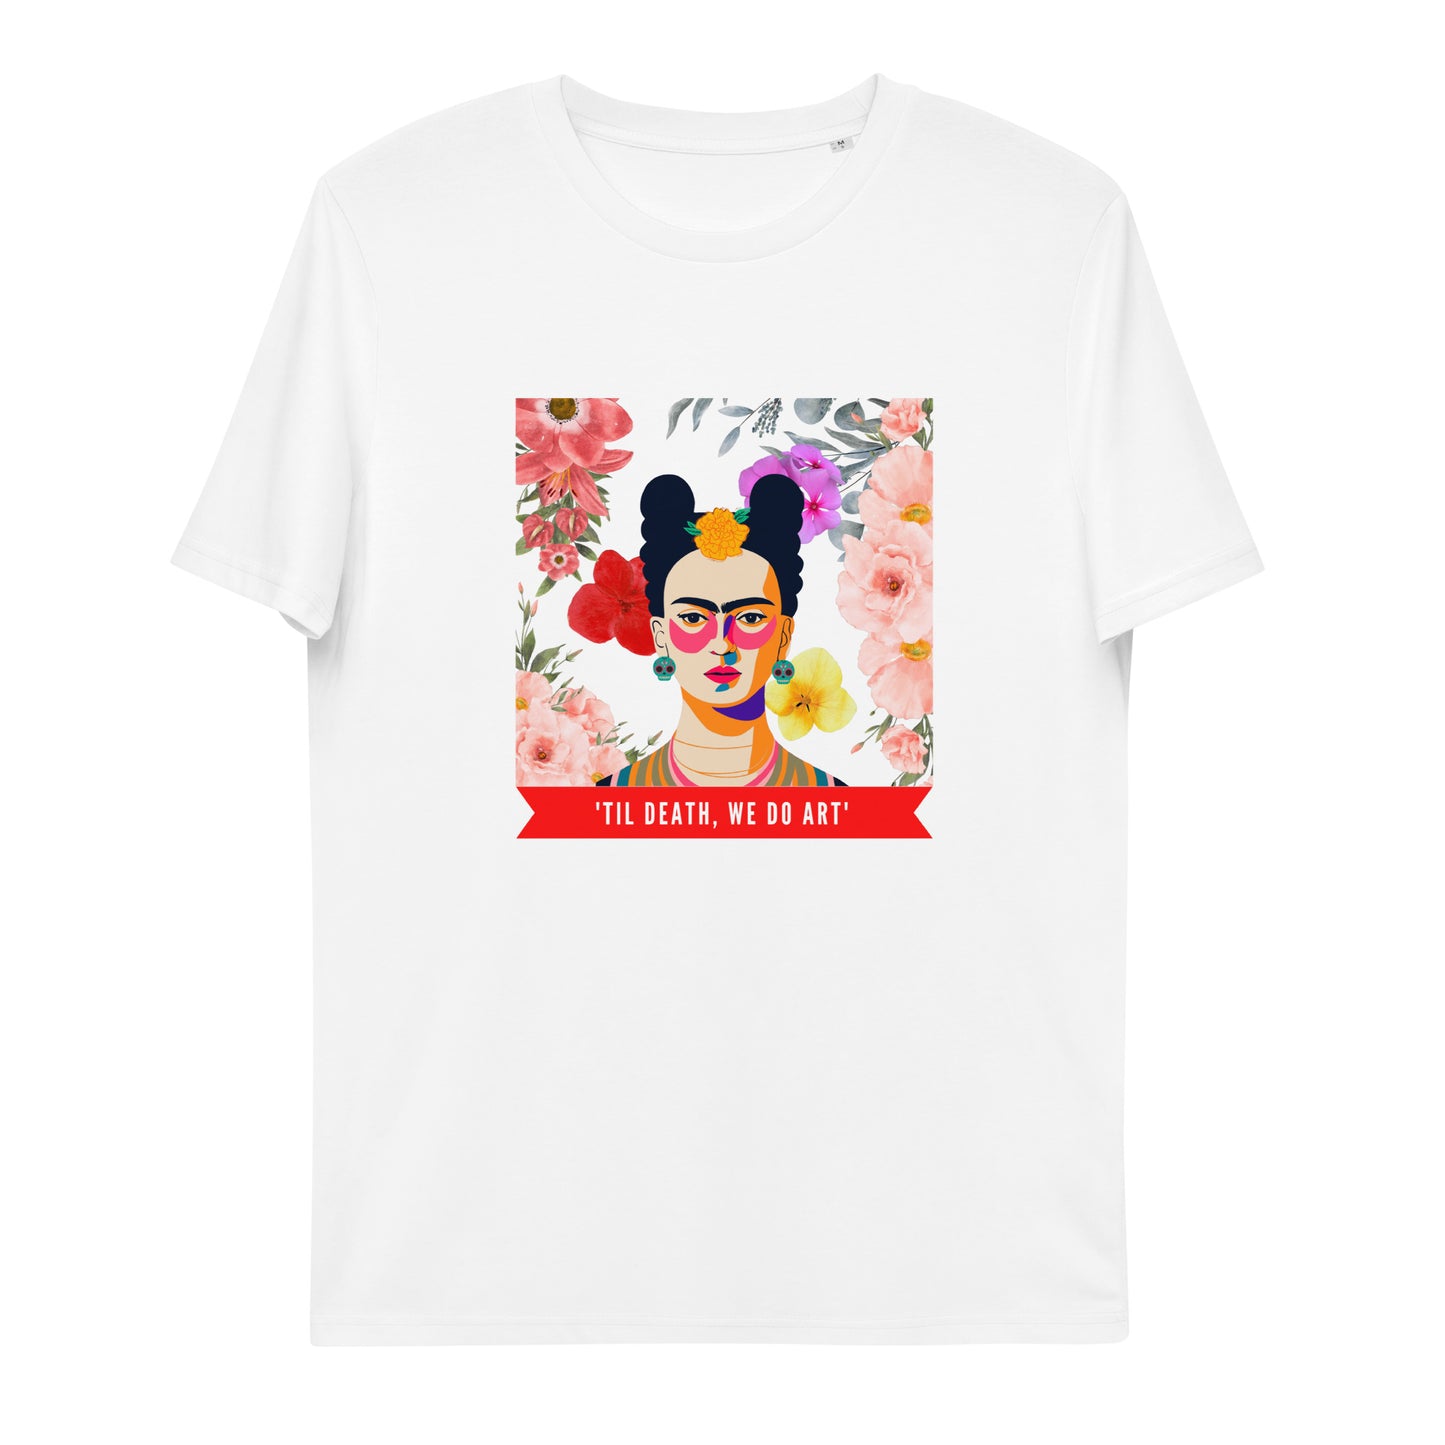 Unisex - Frida Kahlo - Empowerment T-shirt - Artist - Art